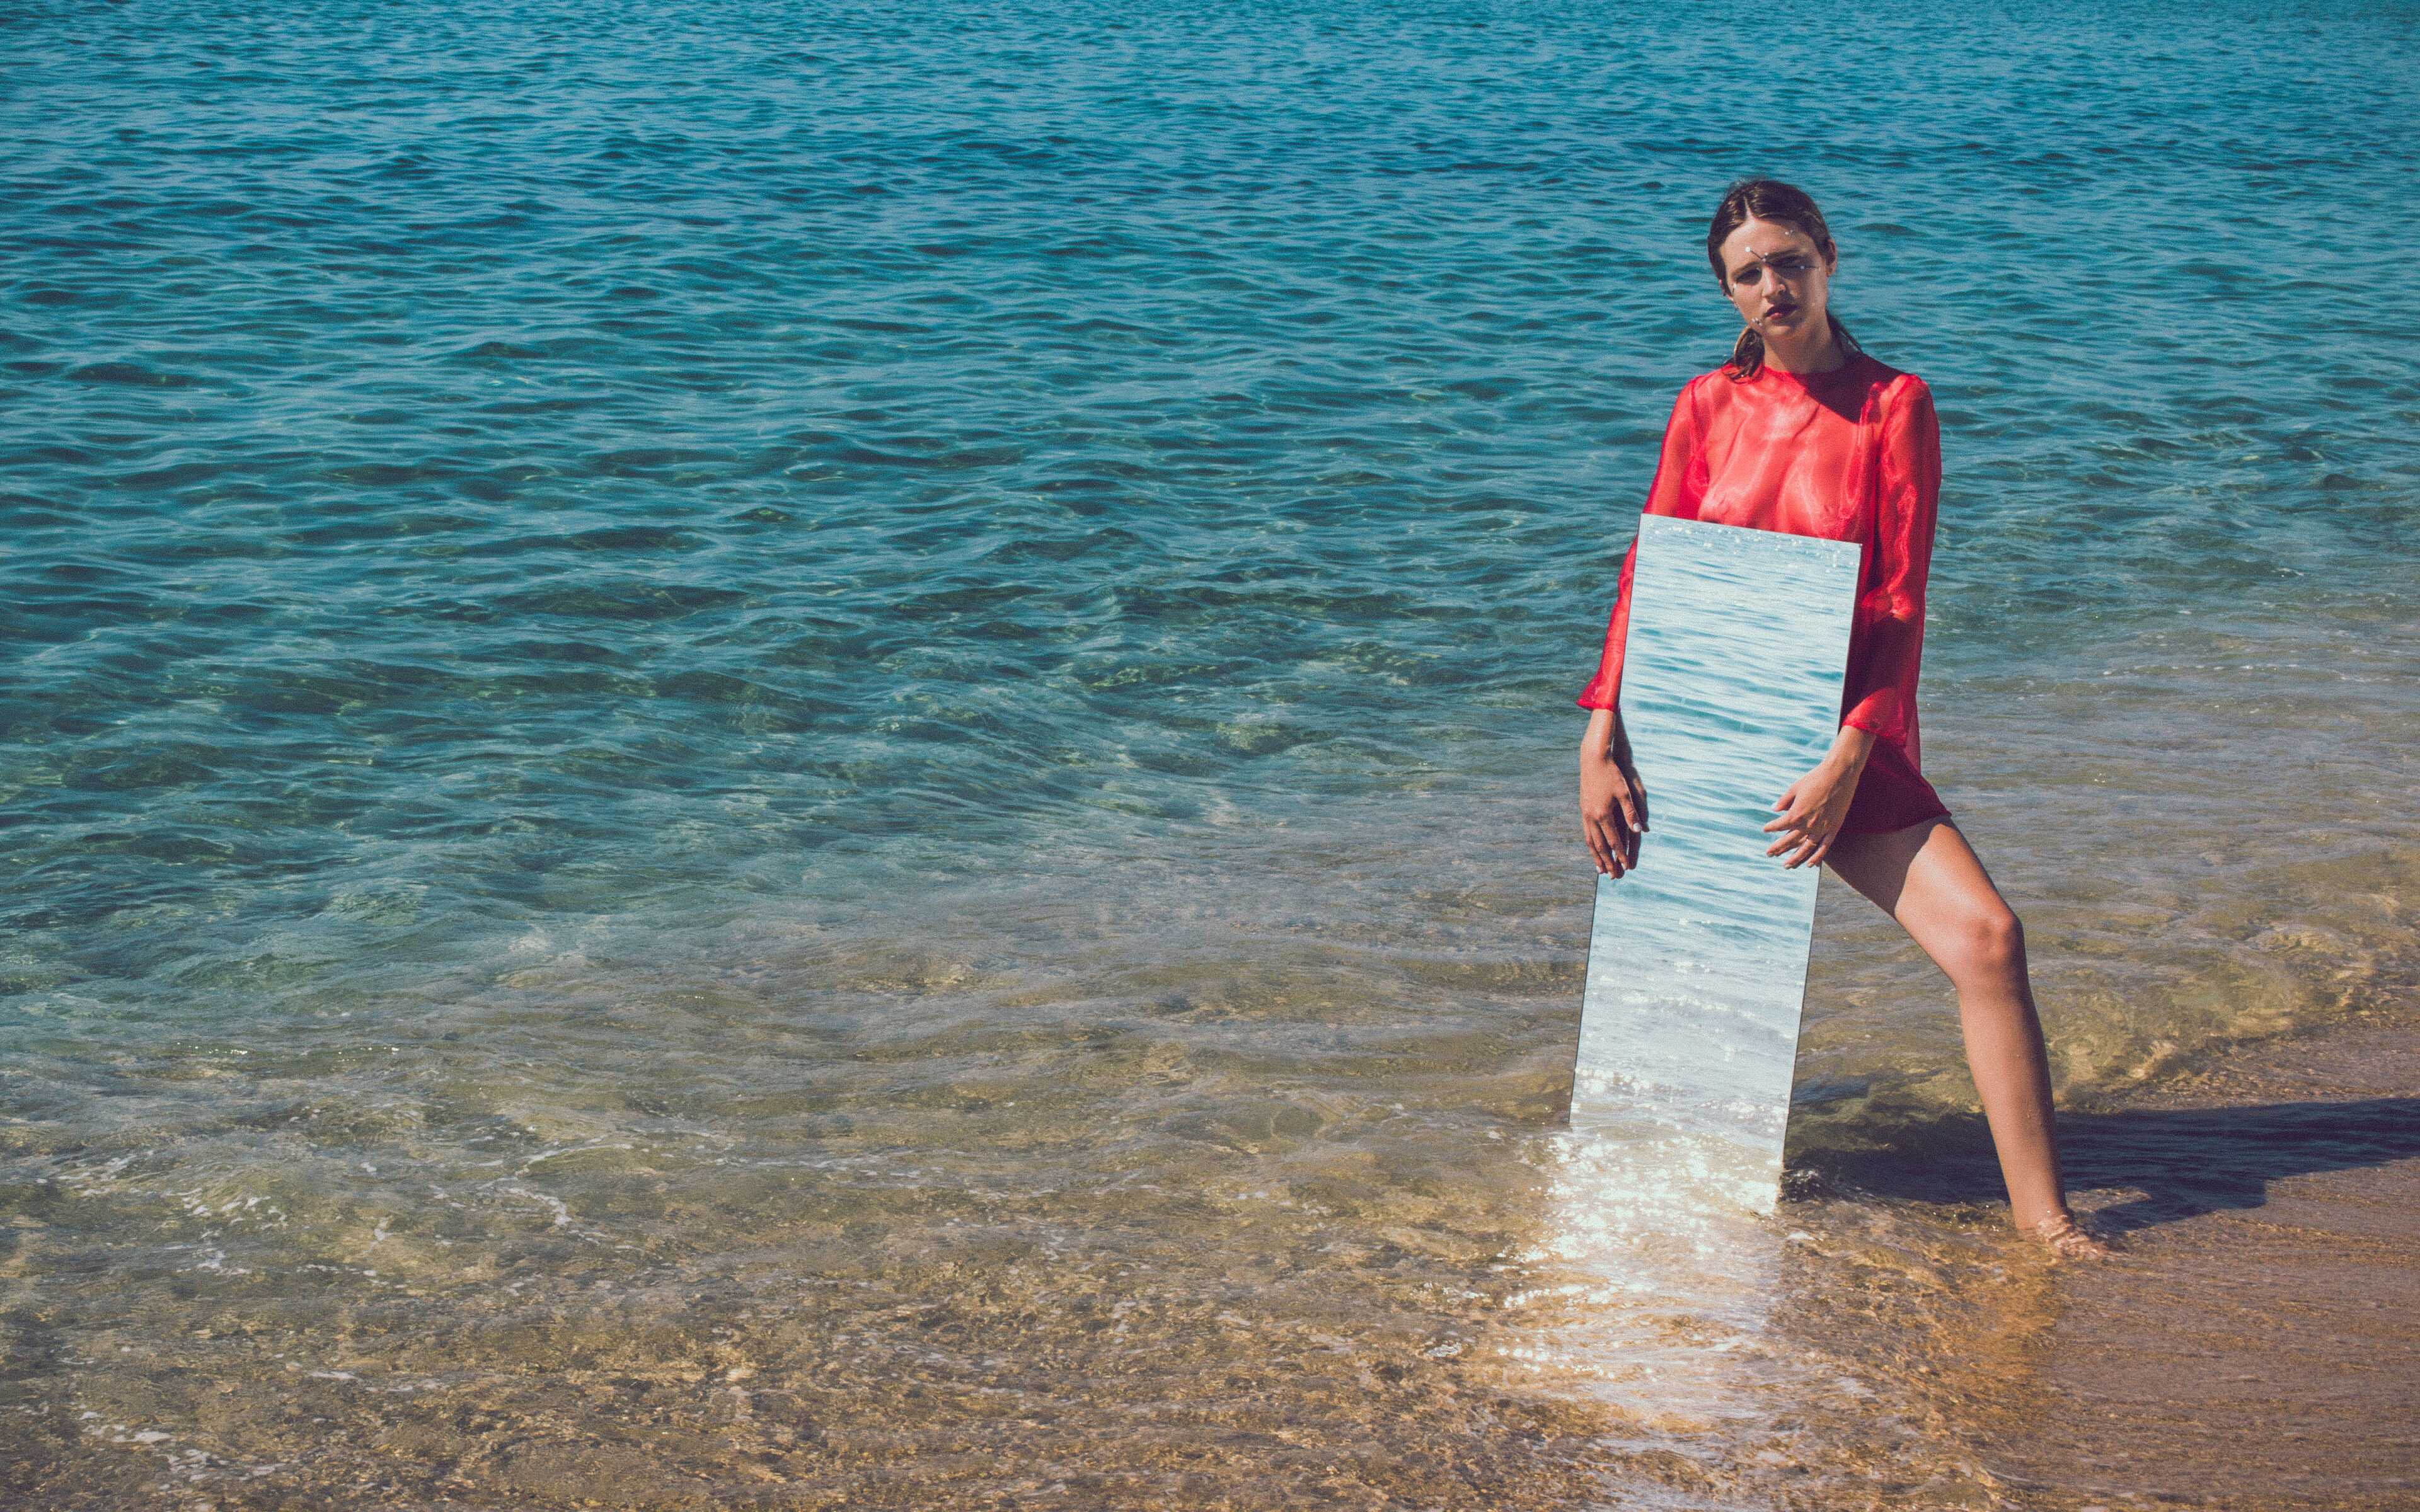 Una mujer con blusa roja está en el mar sosteniendo un espejo que refleja el agua, creando una intersección surrealista entre imagen y realidad.